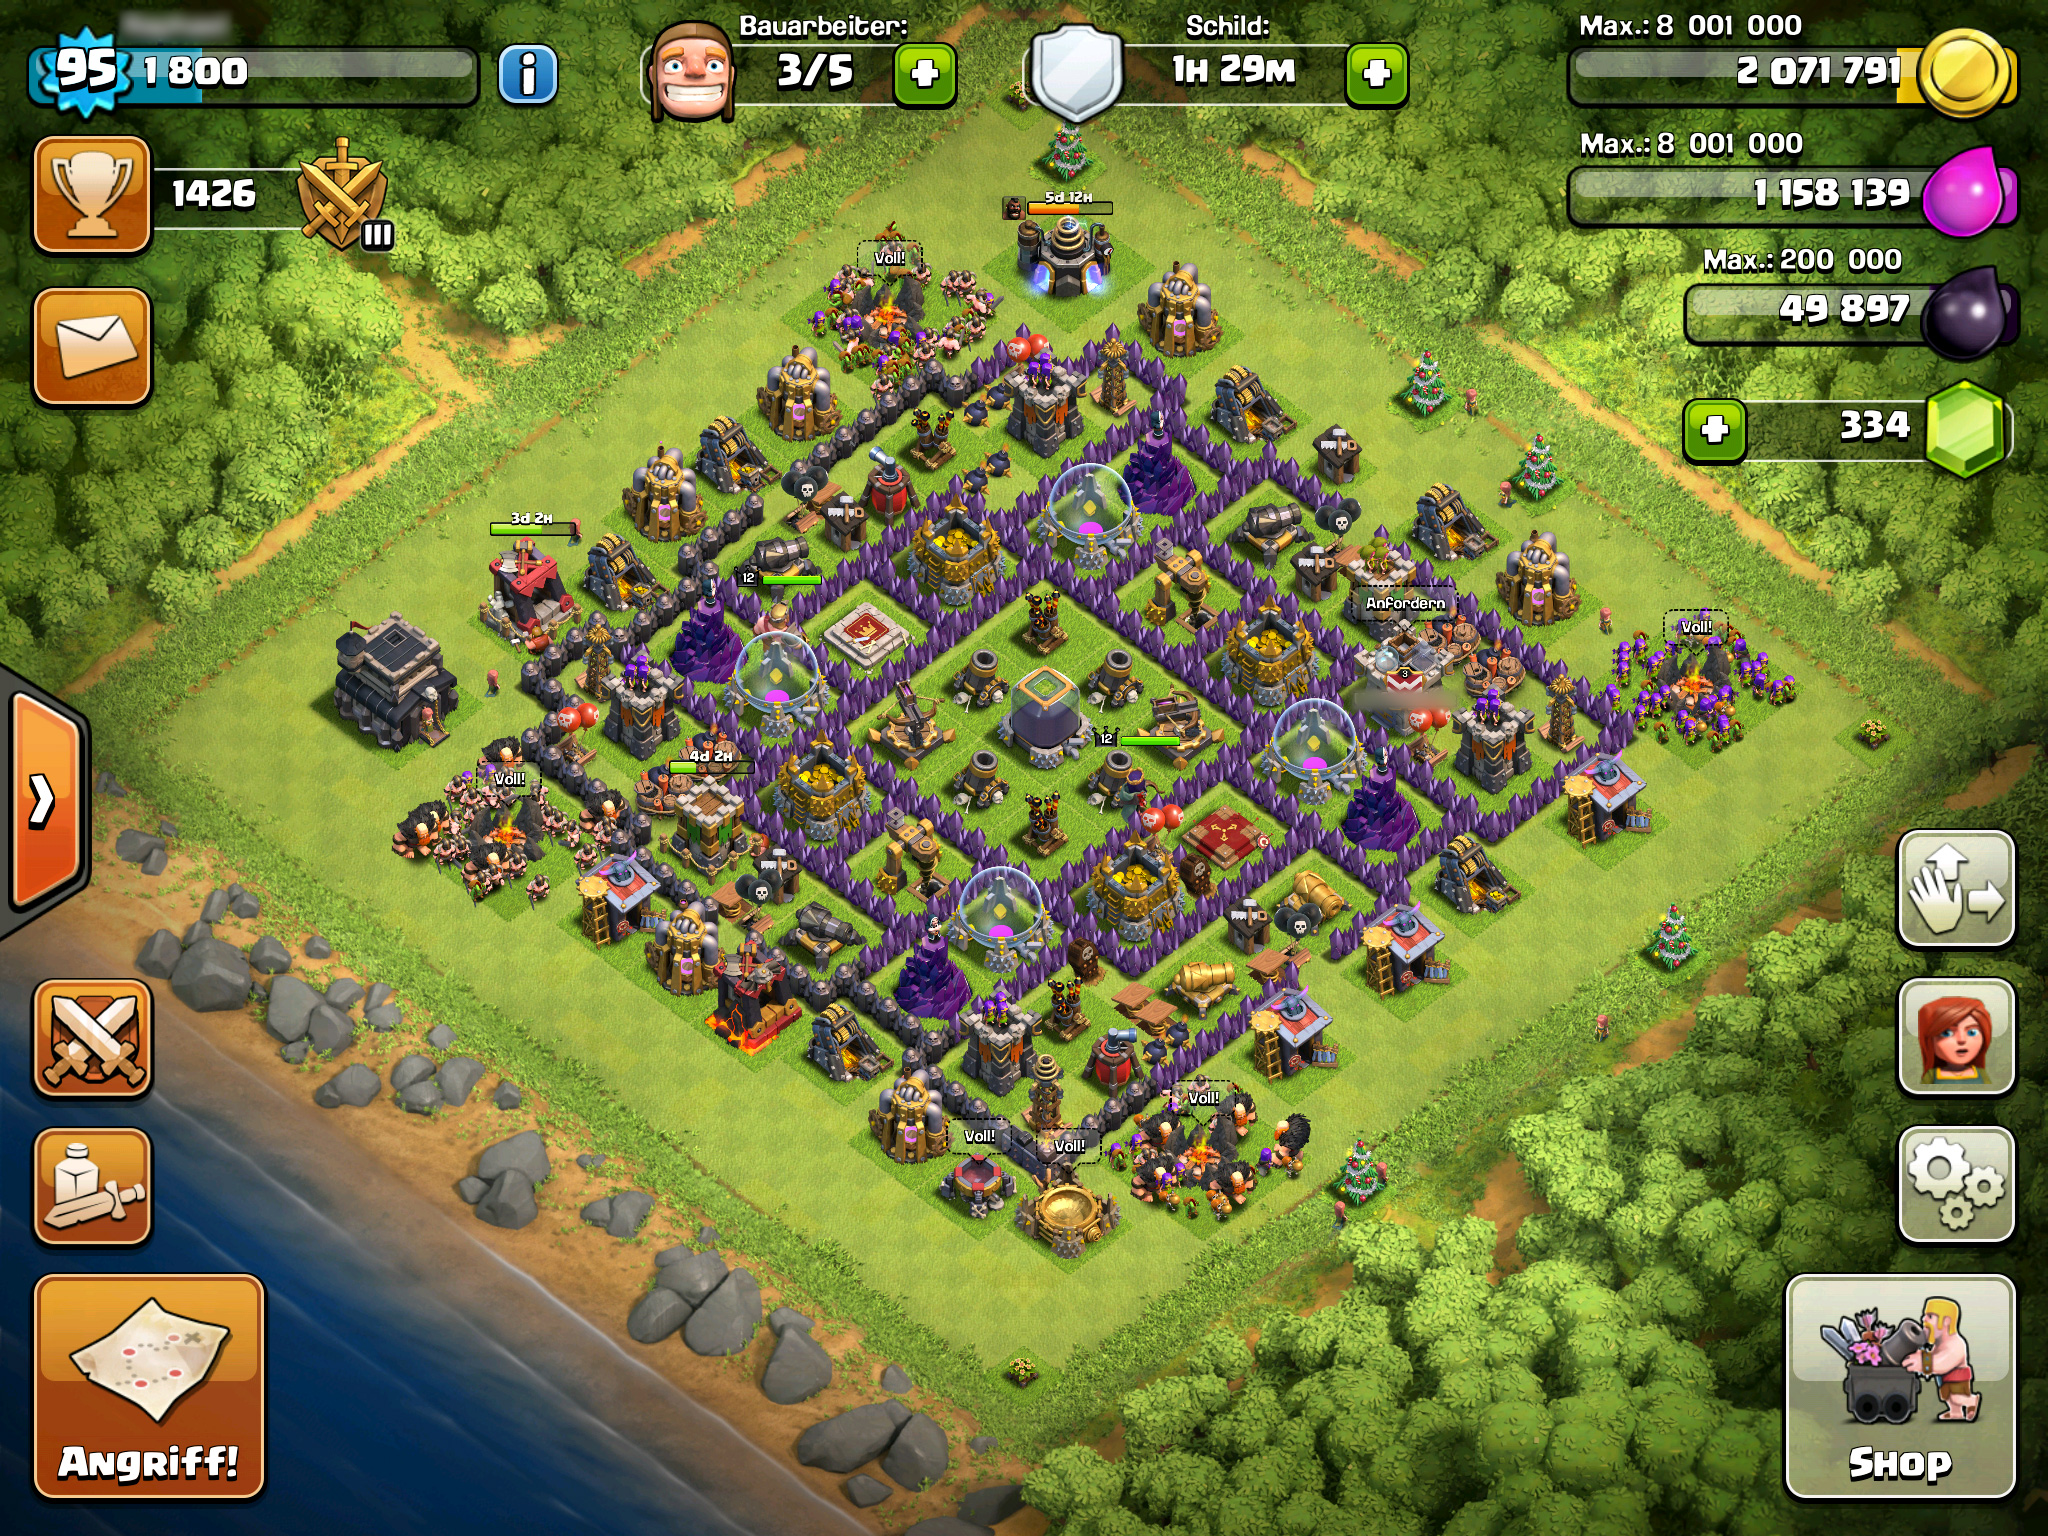 Abbildung 1: Ein Dorf mit zentralem Rathaus und vollen Truppenlagern. (Screenshot aus "Clash of Clans" 2012)